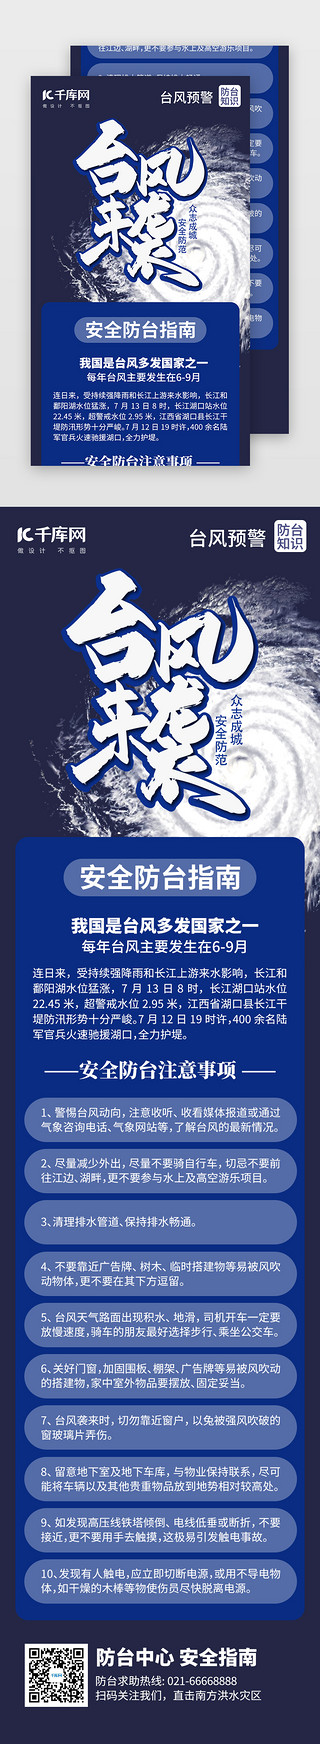 台风天气UI设计素材_台风预警安全指南H5